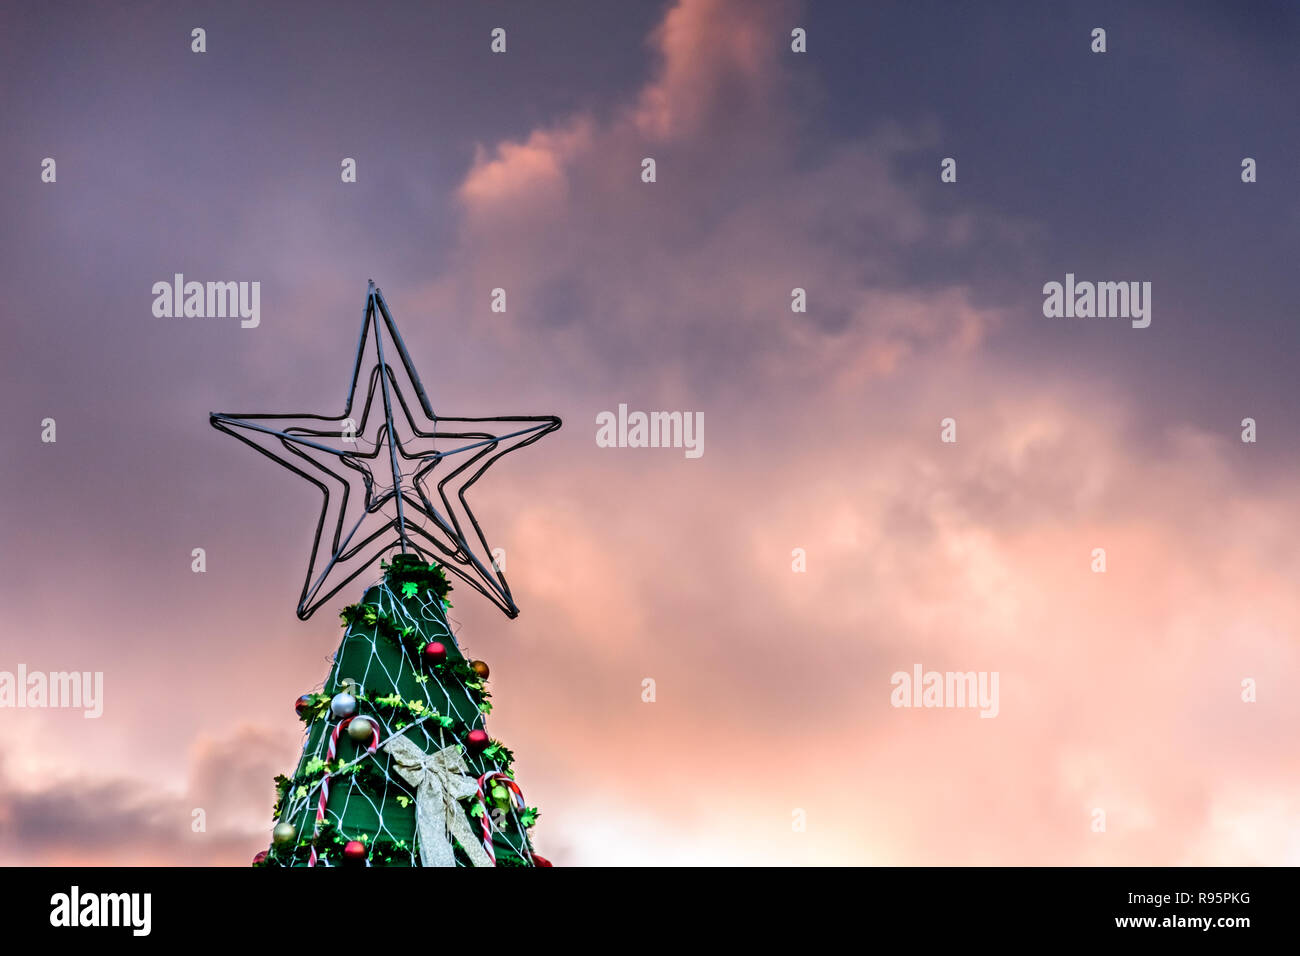 Stern auf der Oberseite des künstlichen Weihnachtsbaum gegen Sonnenuntergang Himmel in Guatemala, Mittelamerika Stockfoto